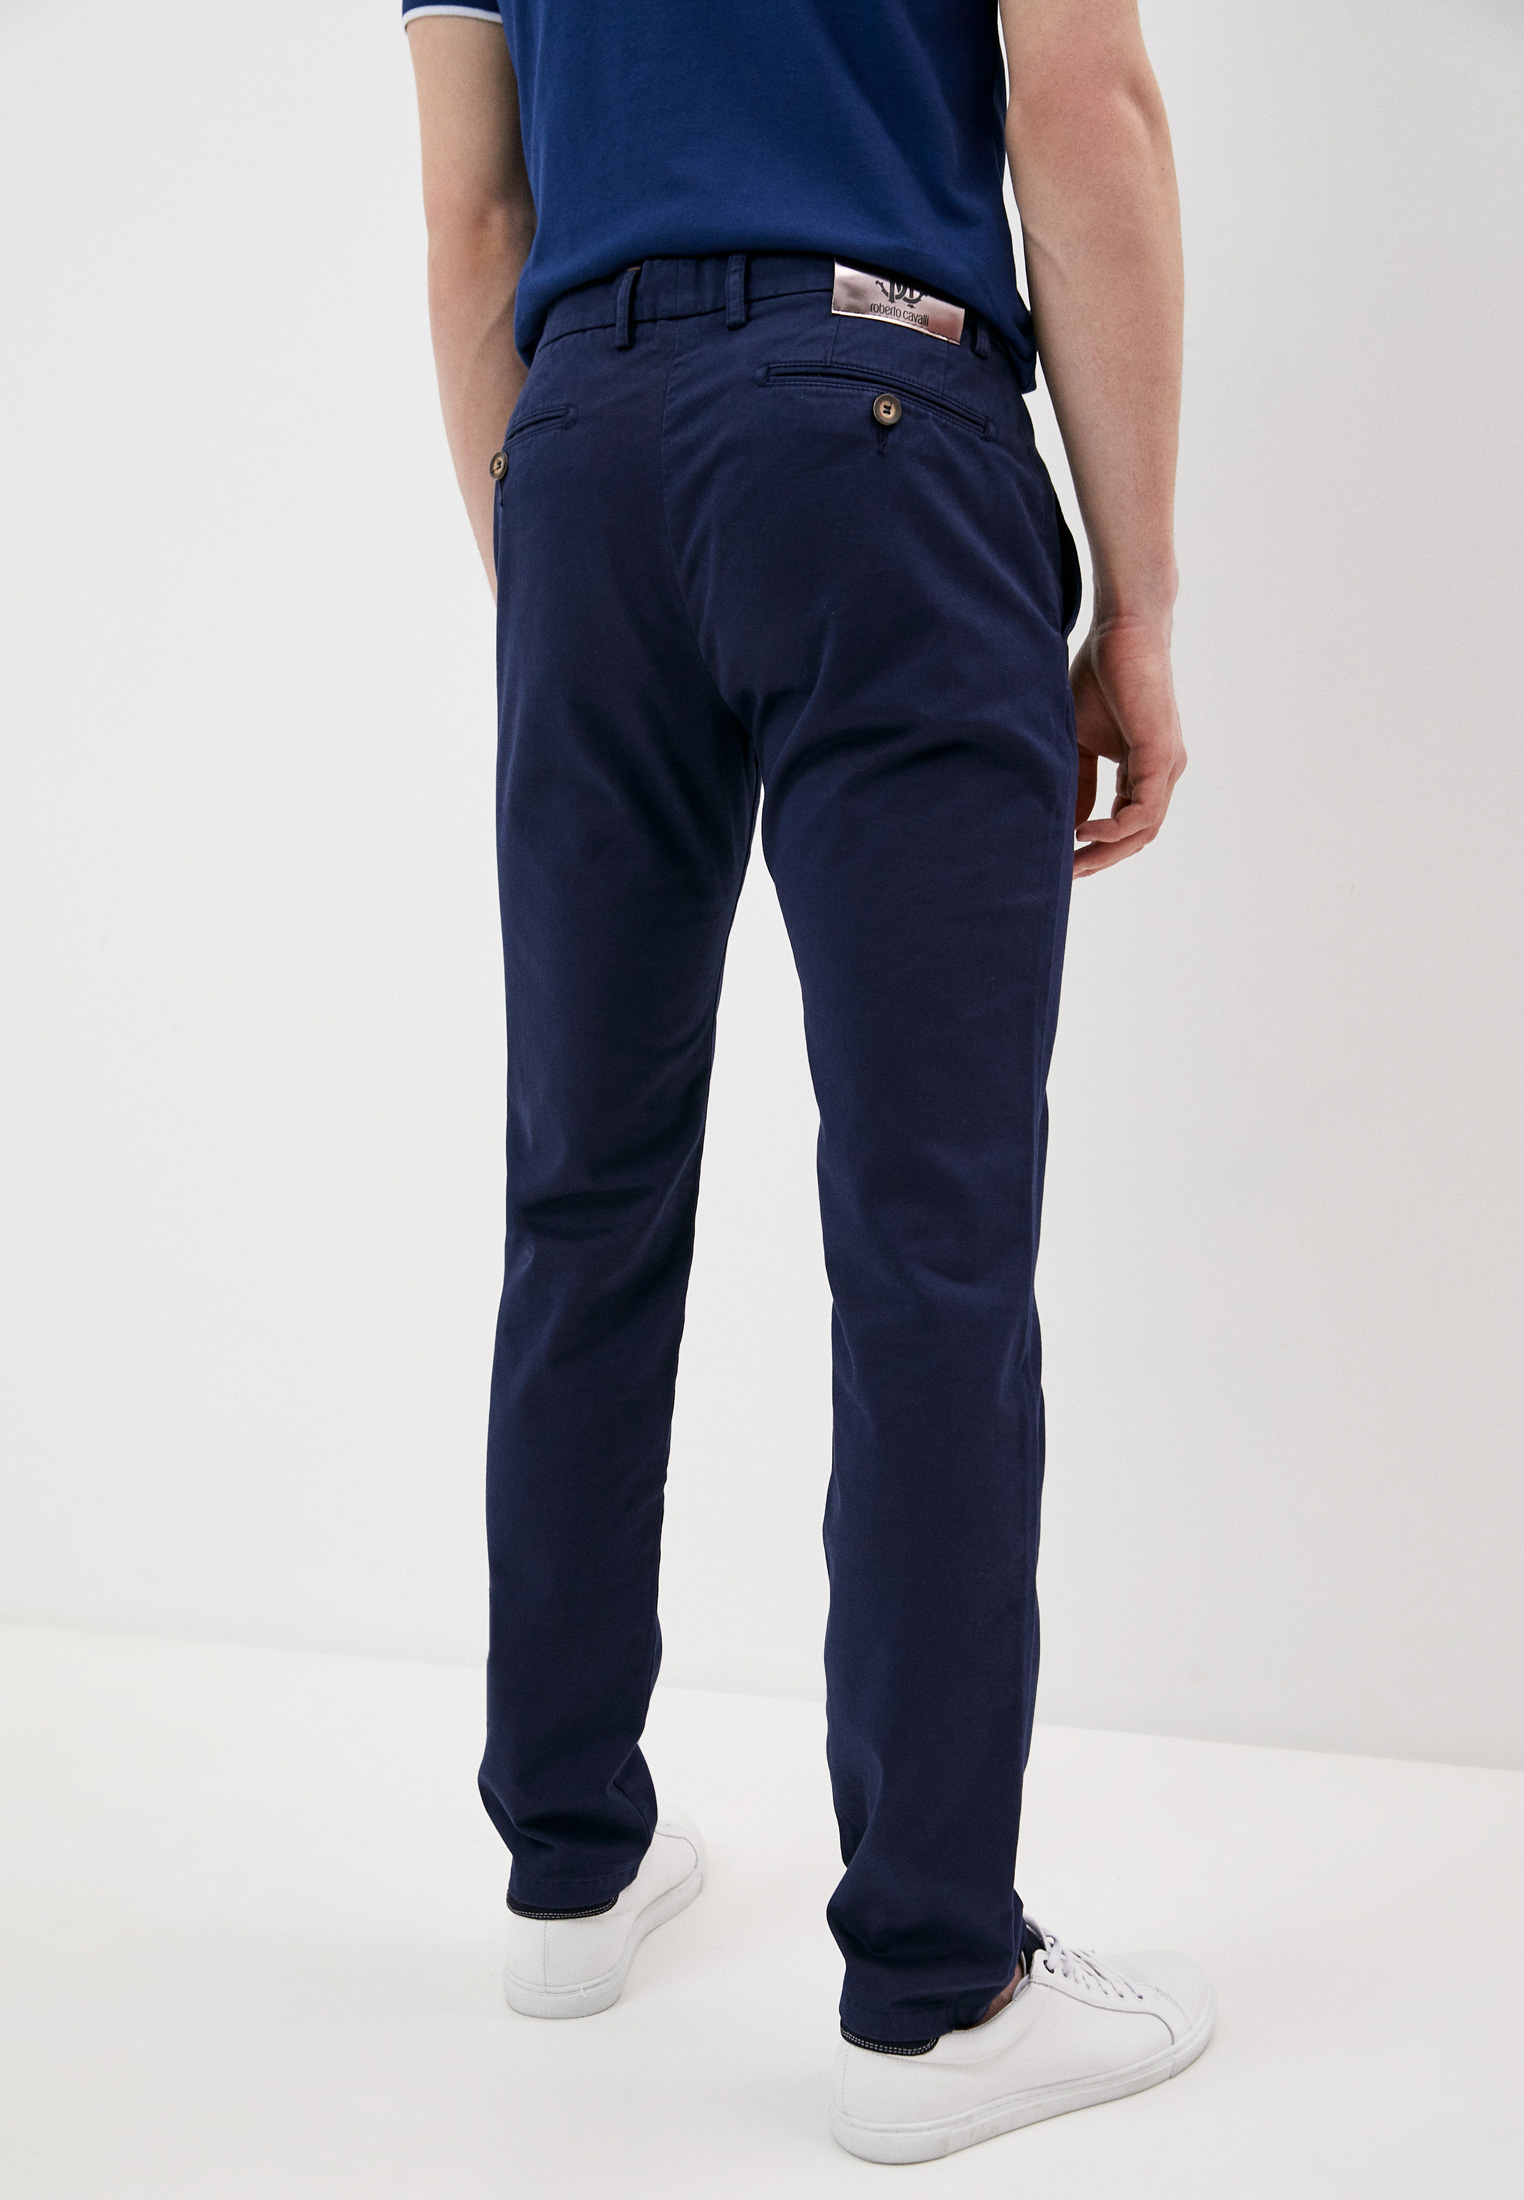 Мужские повседневные брюки Roberto Cavalli (Роберто Кавалли) HST200A6000: изображение 4